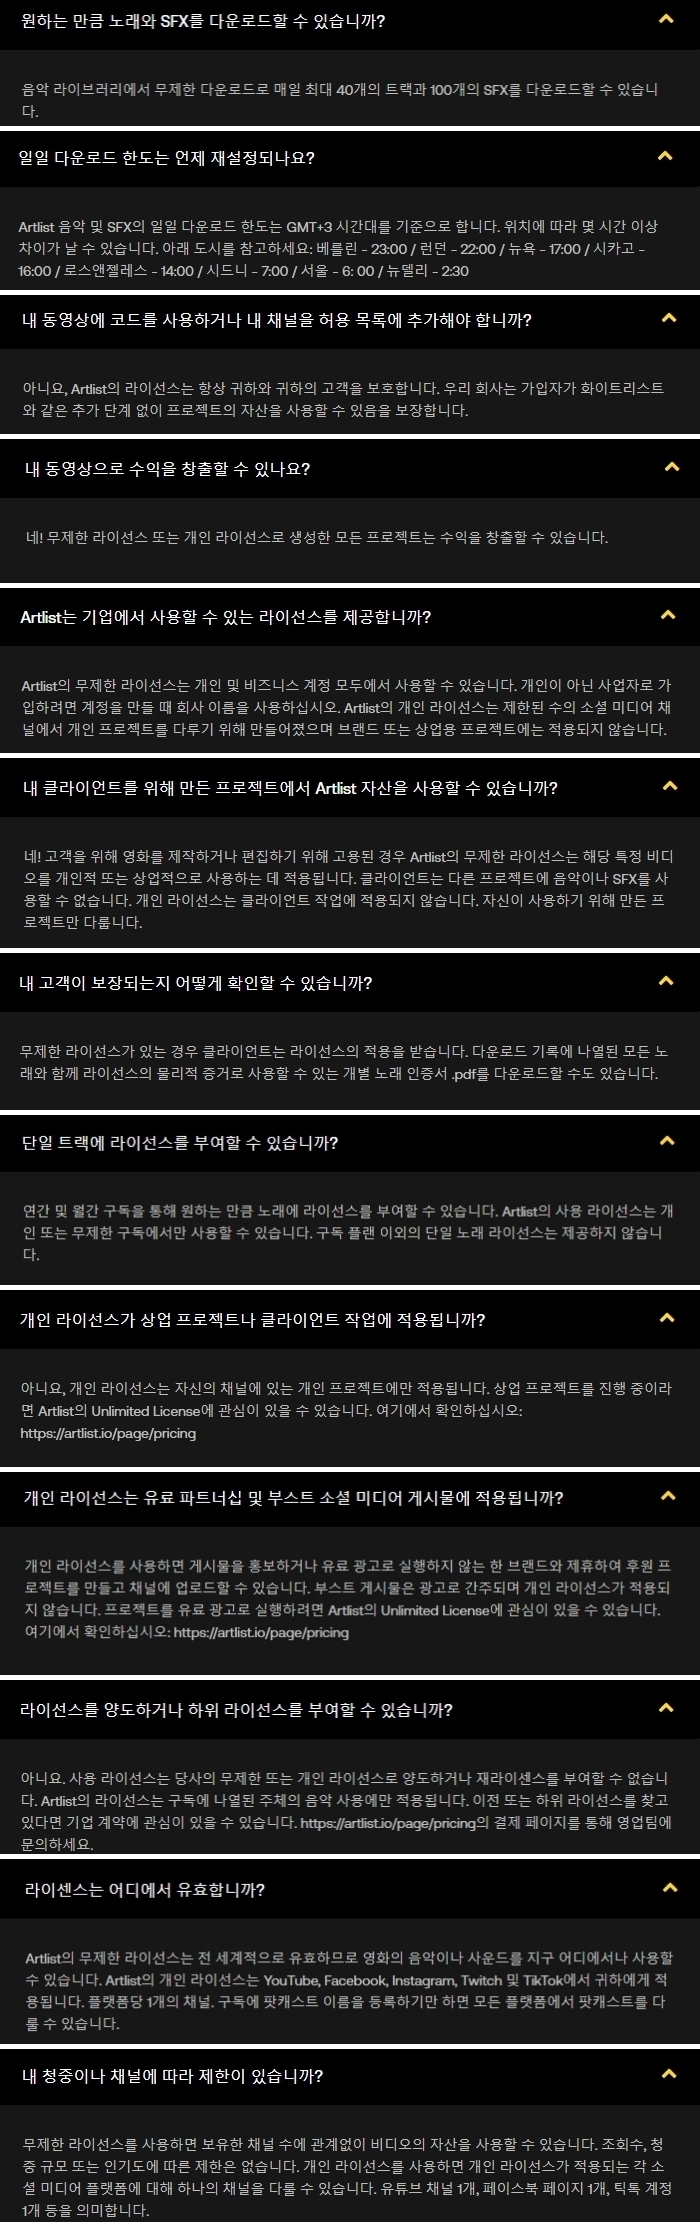 아트리스트 Q&A, 유튜브 브금, 영상편집 음향효과 사이트